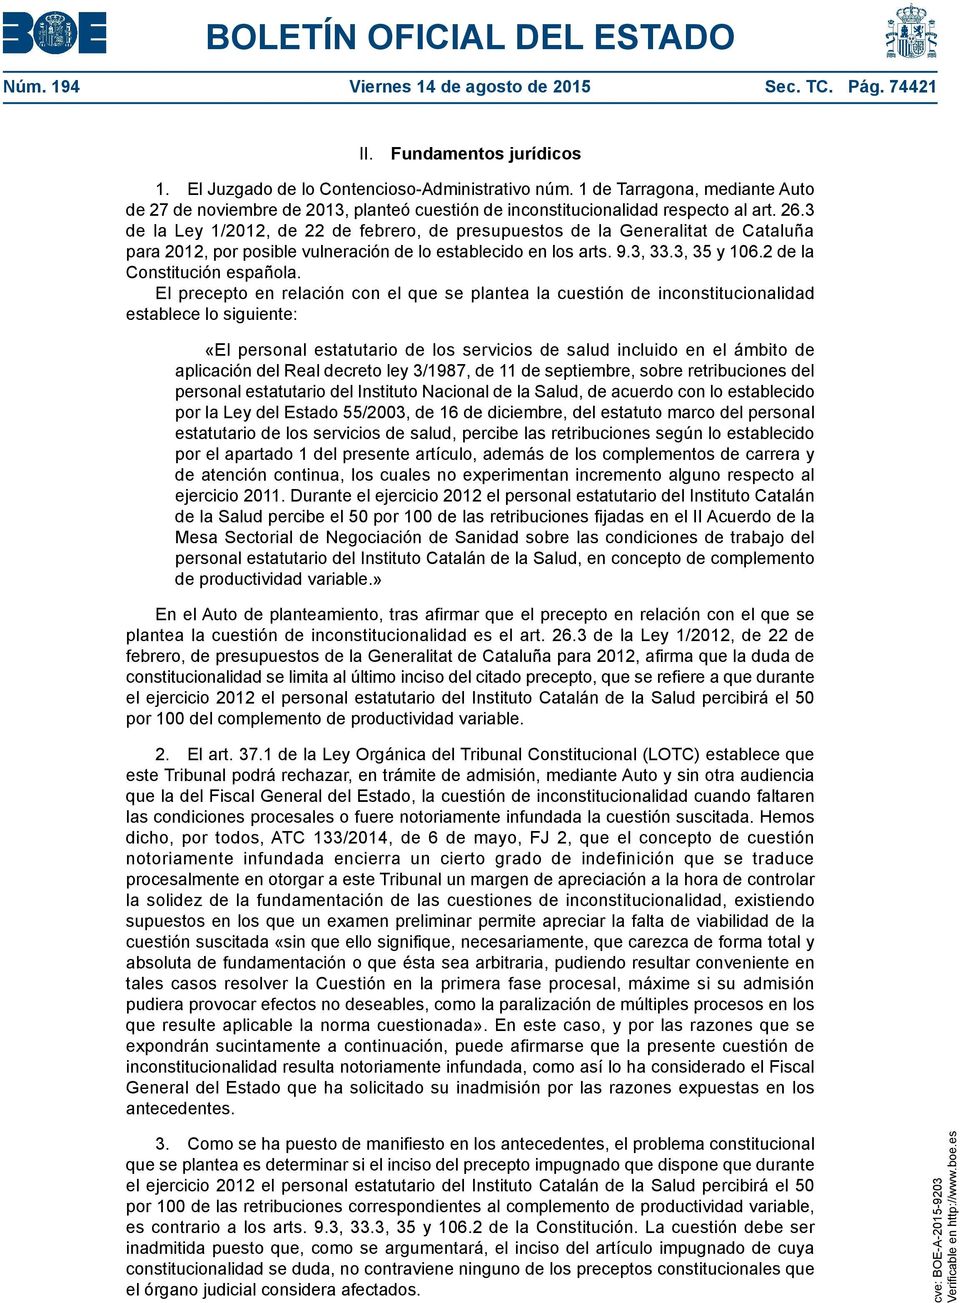 3 de la Ley 1/2012, de 22 de febrero, de presupuestos de la Generalitat de Cataluña para 2012, por posible vulneración de lo establecido en los arts. 9.3, 33.3, 35 y 106.2 de la Constitución española.